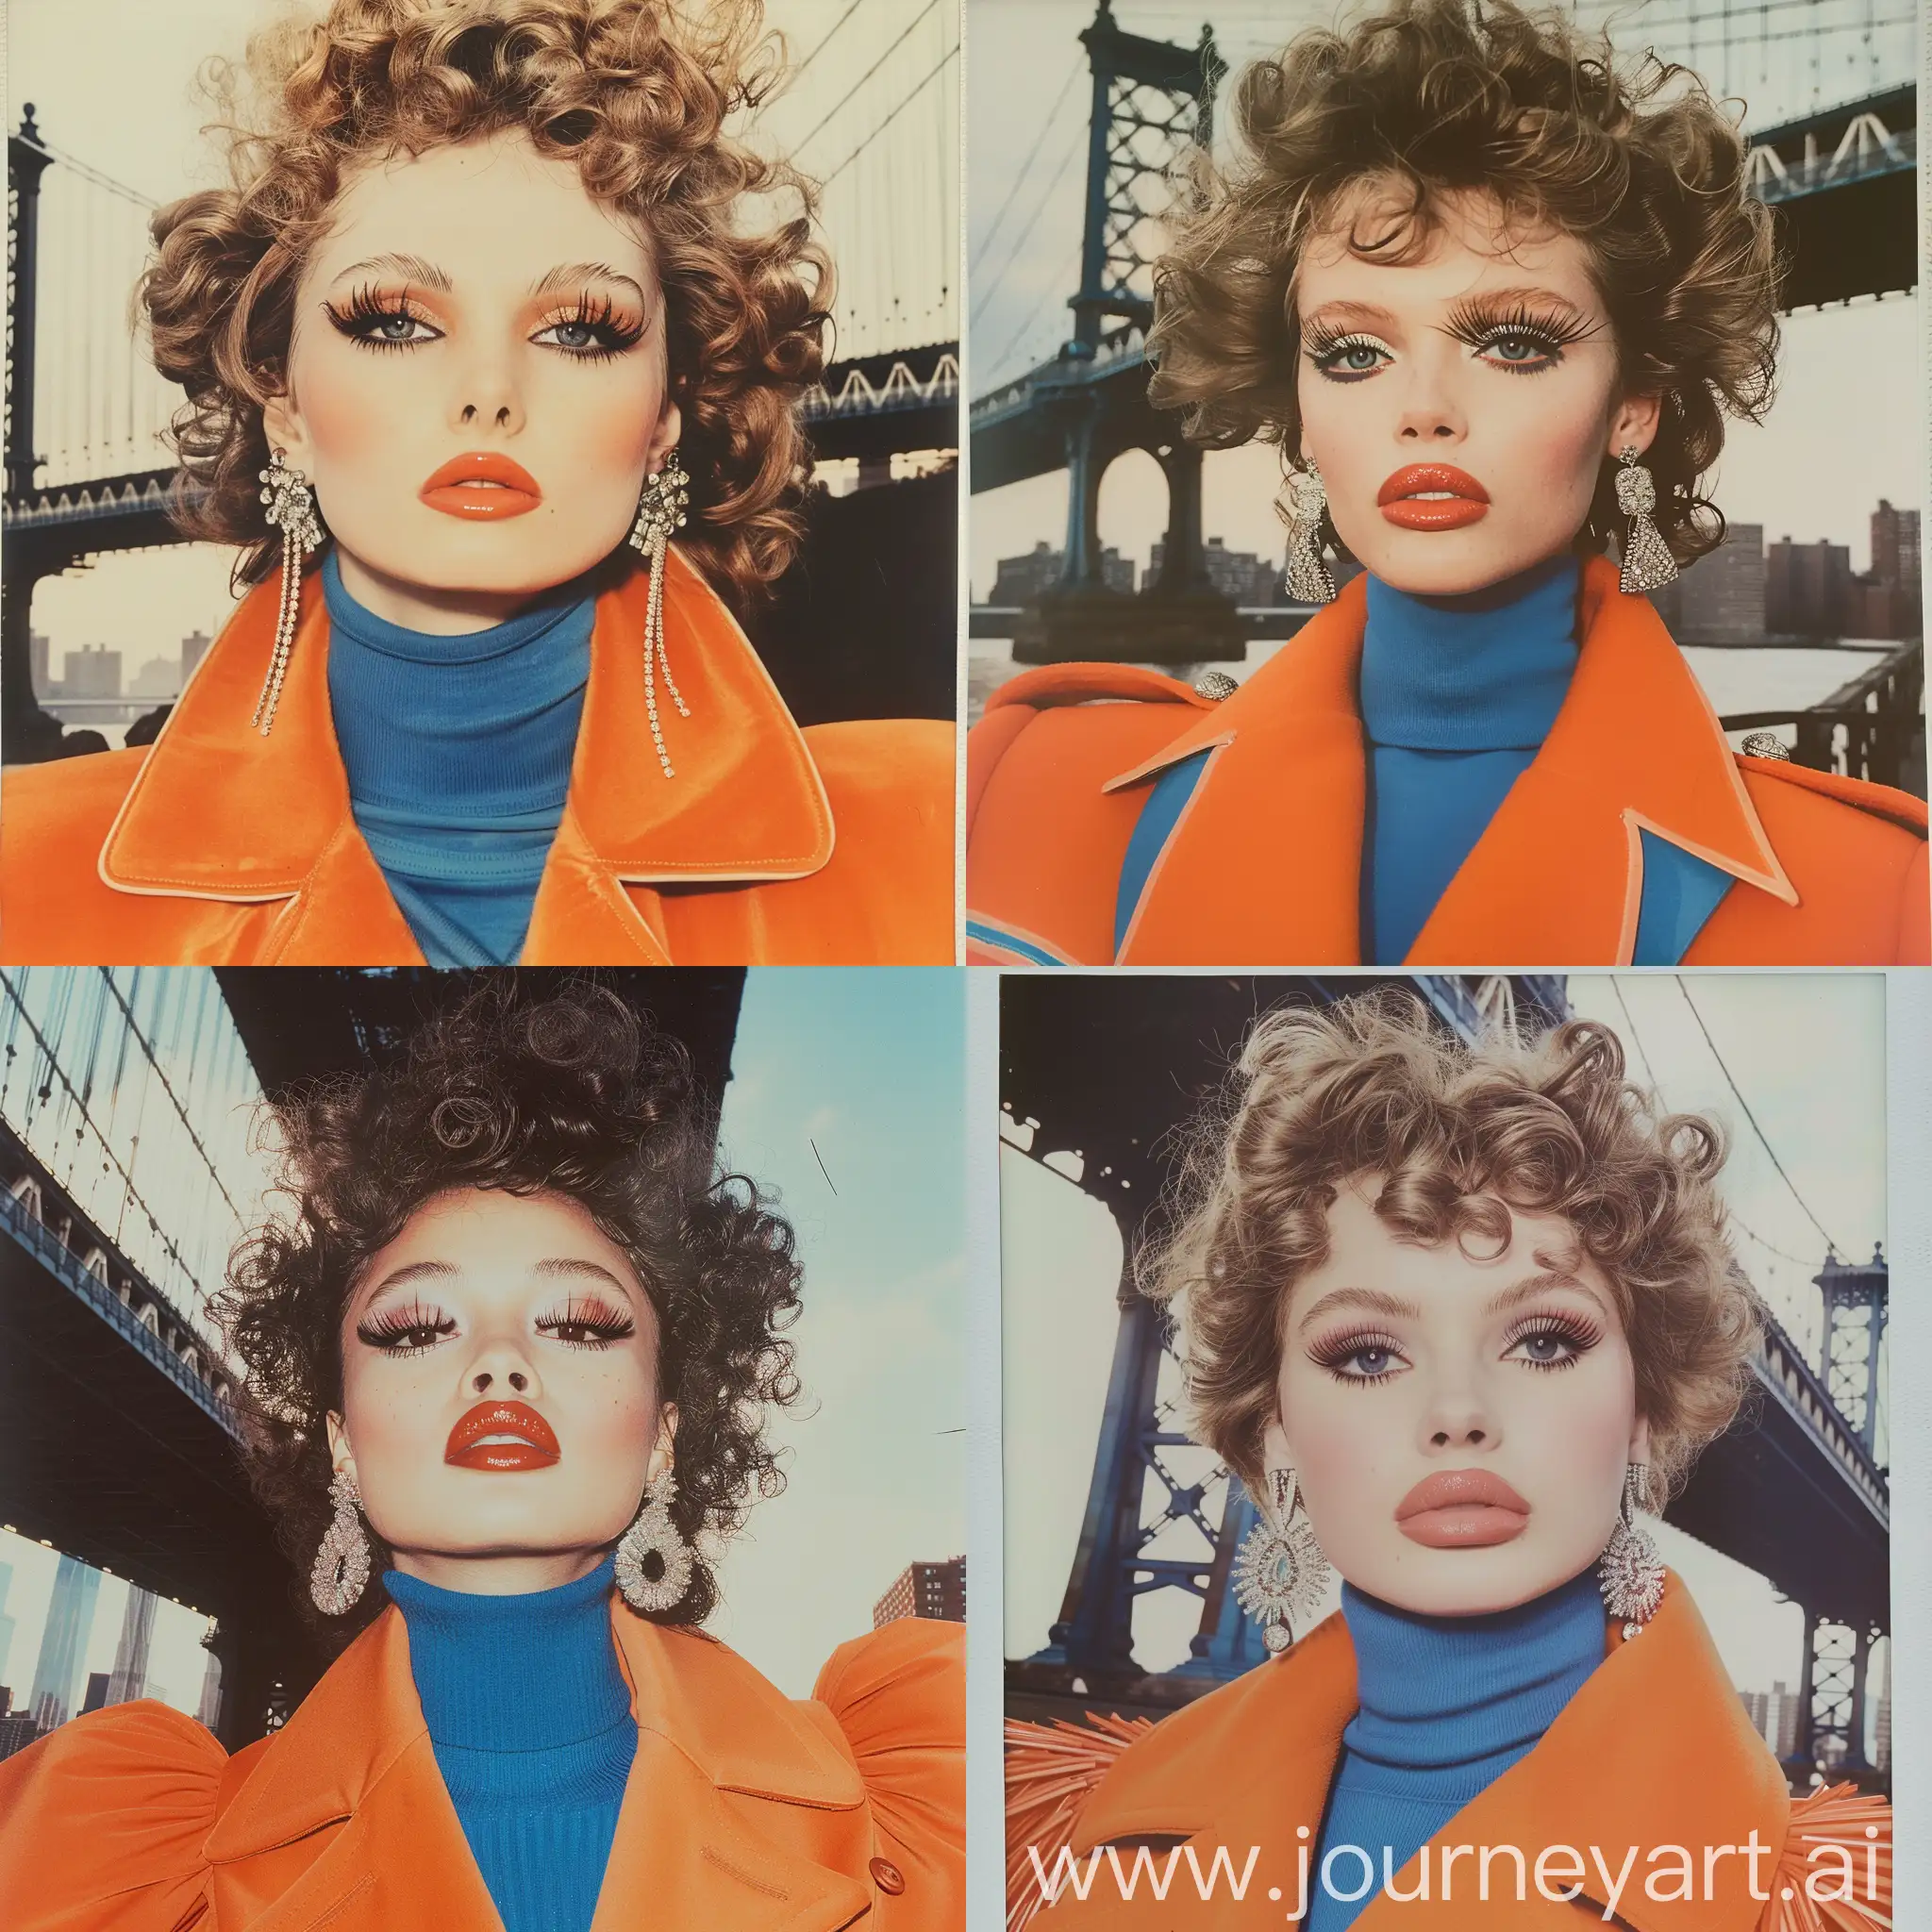 1980 Elle fashion, New York bridge, fashion model, детальная проработка глаз, длинные ресницы, пухлые губы, кудрявые волосы, химическая завивка 80-х, укладка 1980, реалистичная поза, оранжевое пальто с широкими плечами, синяя водолазка, крупные серьги с камнями, 
Dolce &Gabbana iconic, высокая мода, Polaroid photoshoot